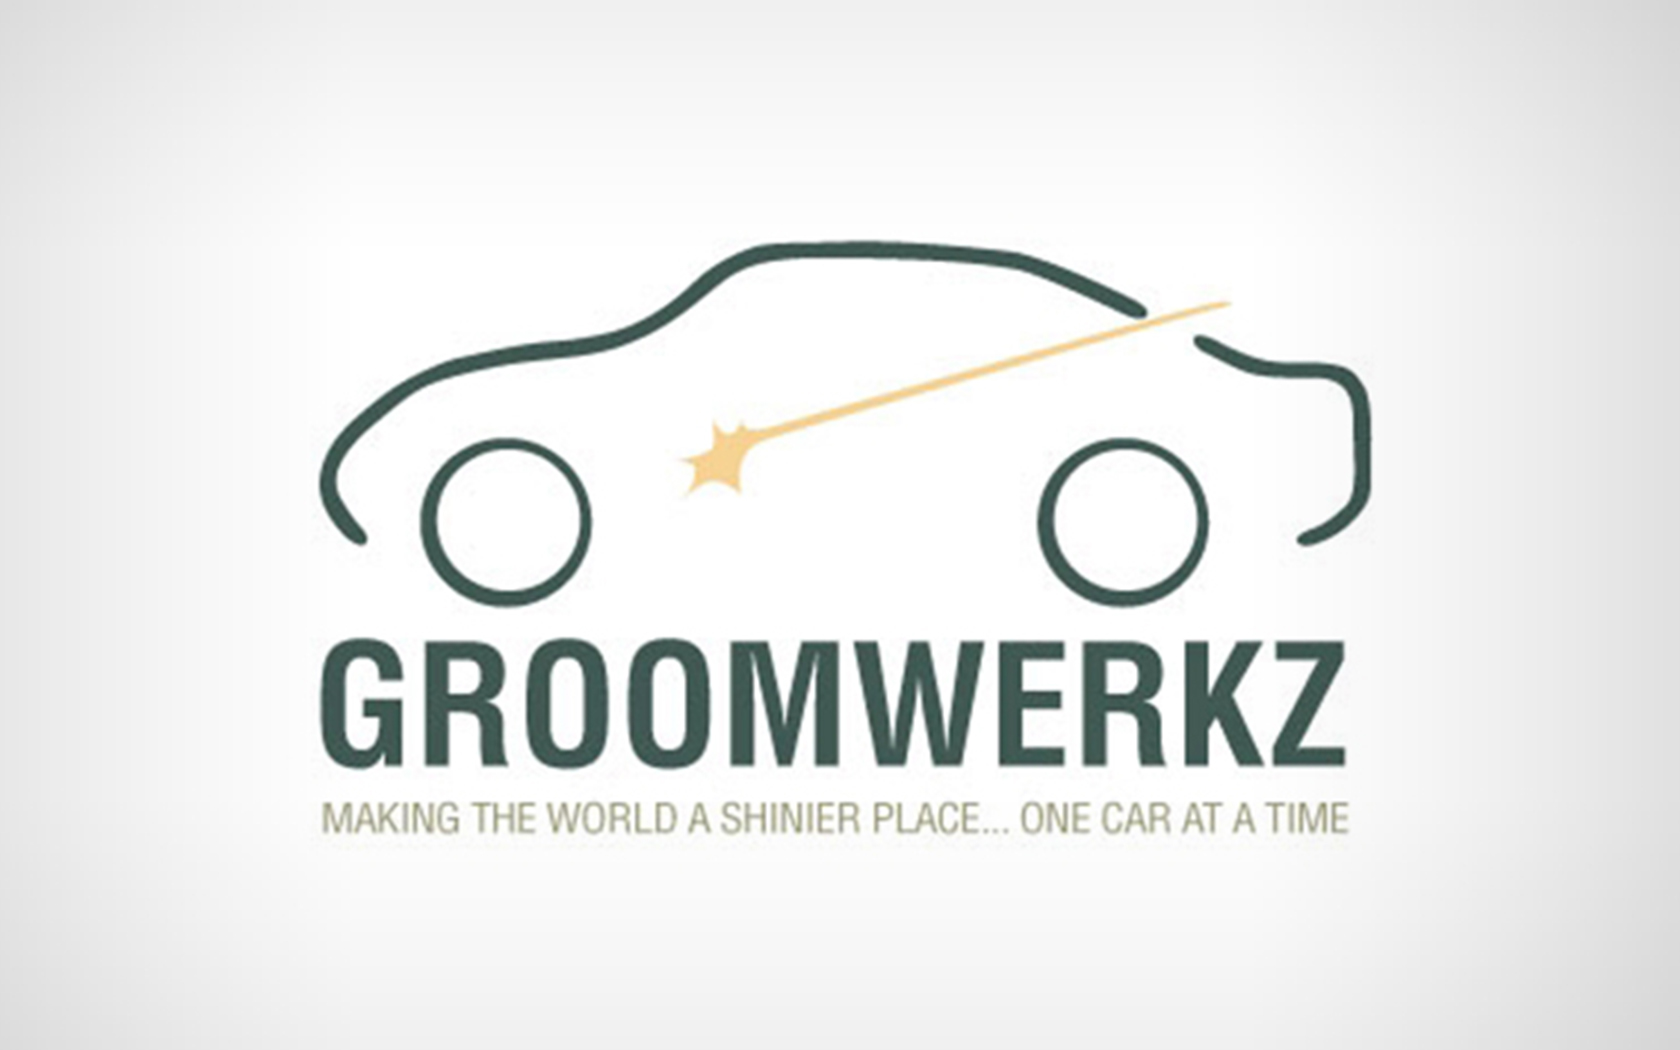 Groomwerkz Car Grooming Logo